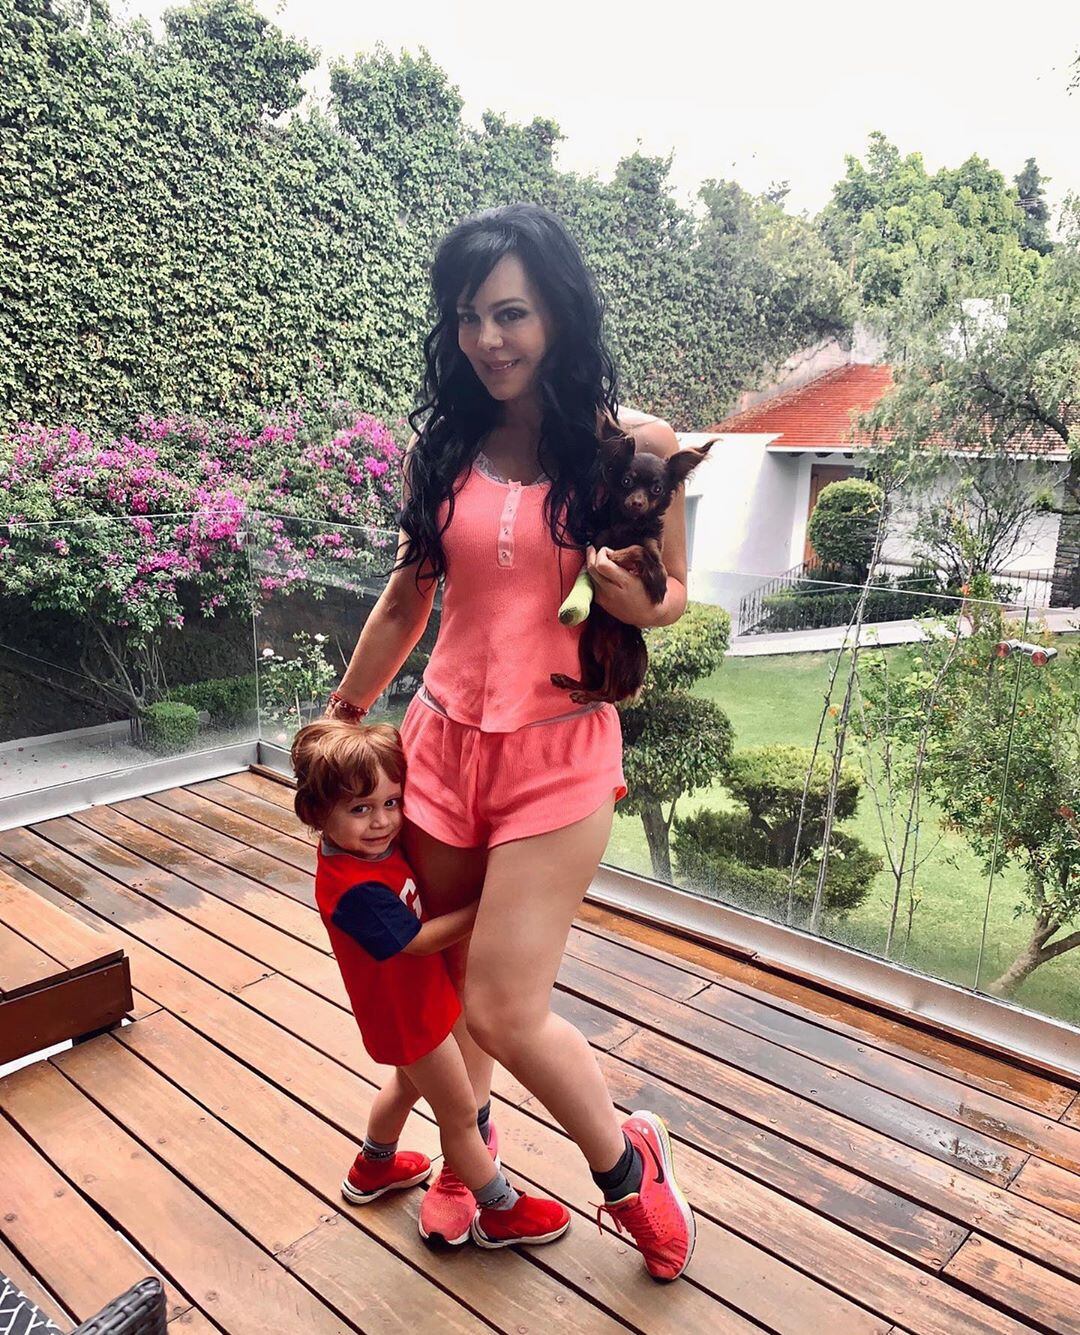 Maribel juega con su nieto José Julián en el enorme jardín de su propiedad (Foto: Instagram @MaribelGuardia)